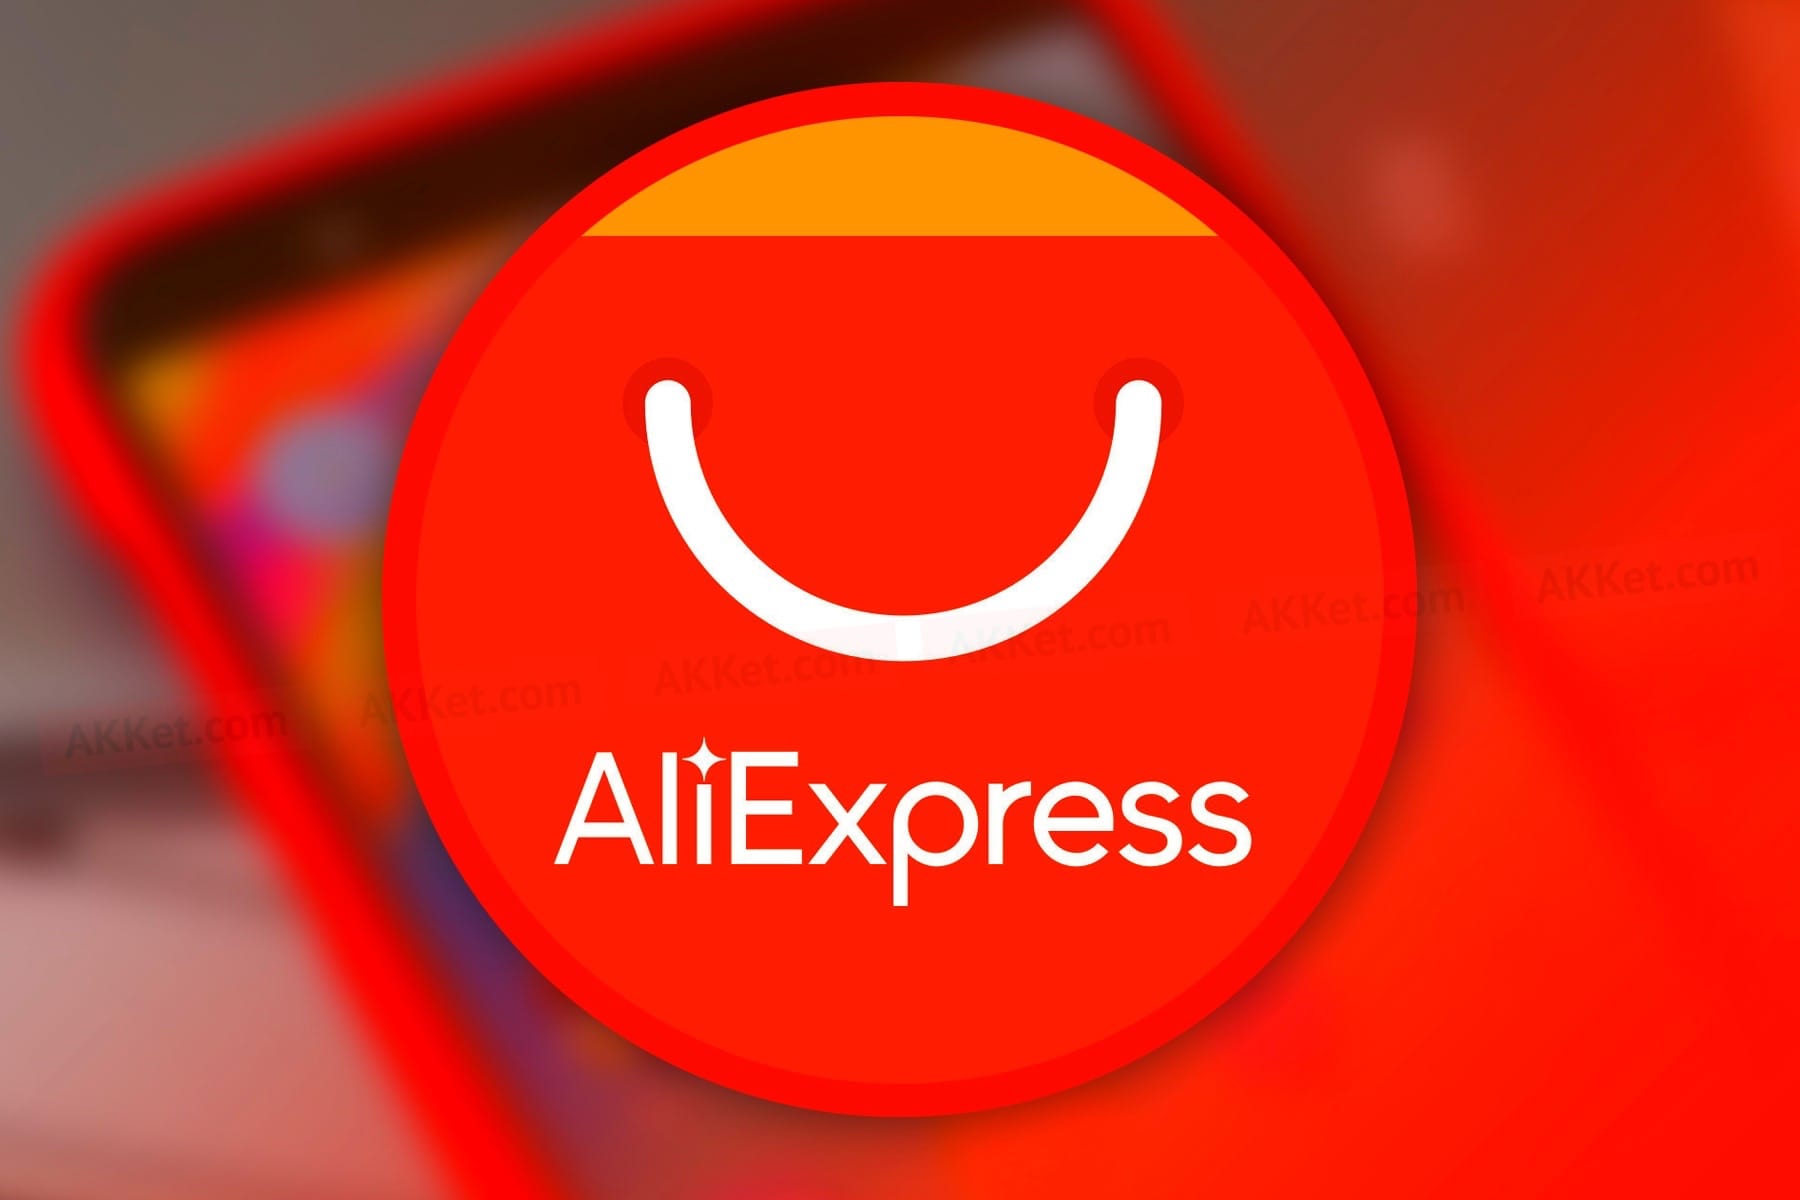 Калининград обошел все российские регионы по цене корзины покупок на AliExpress